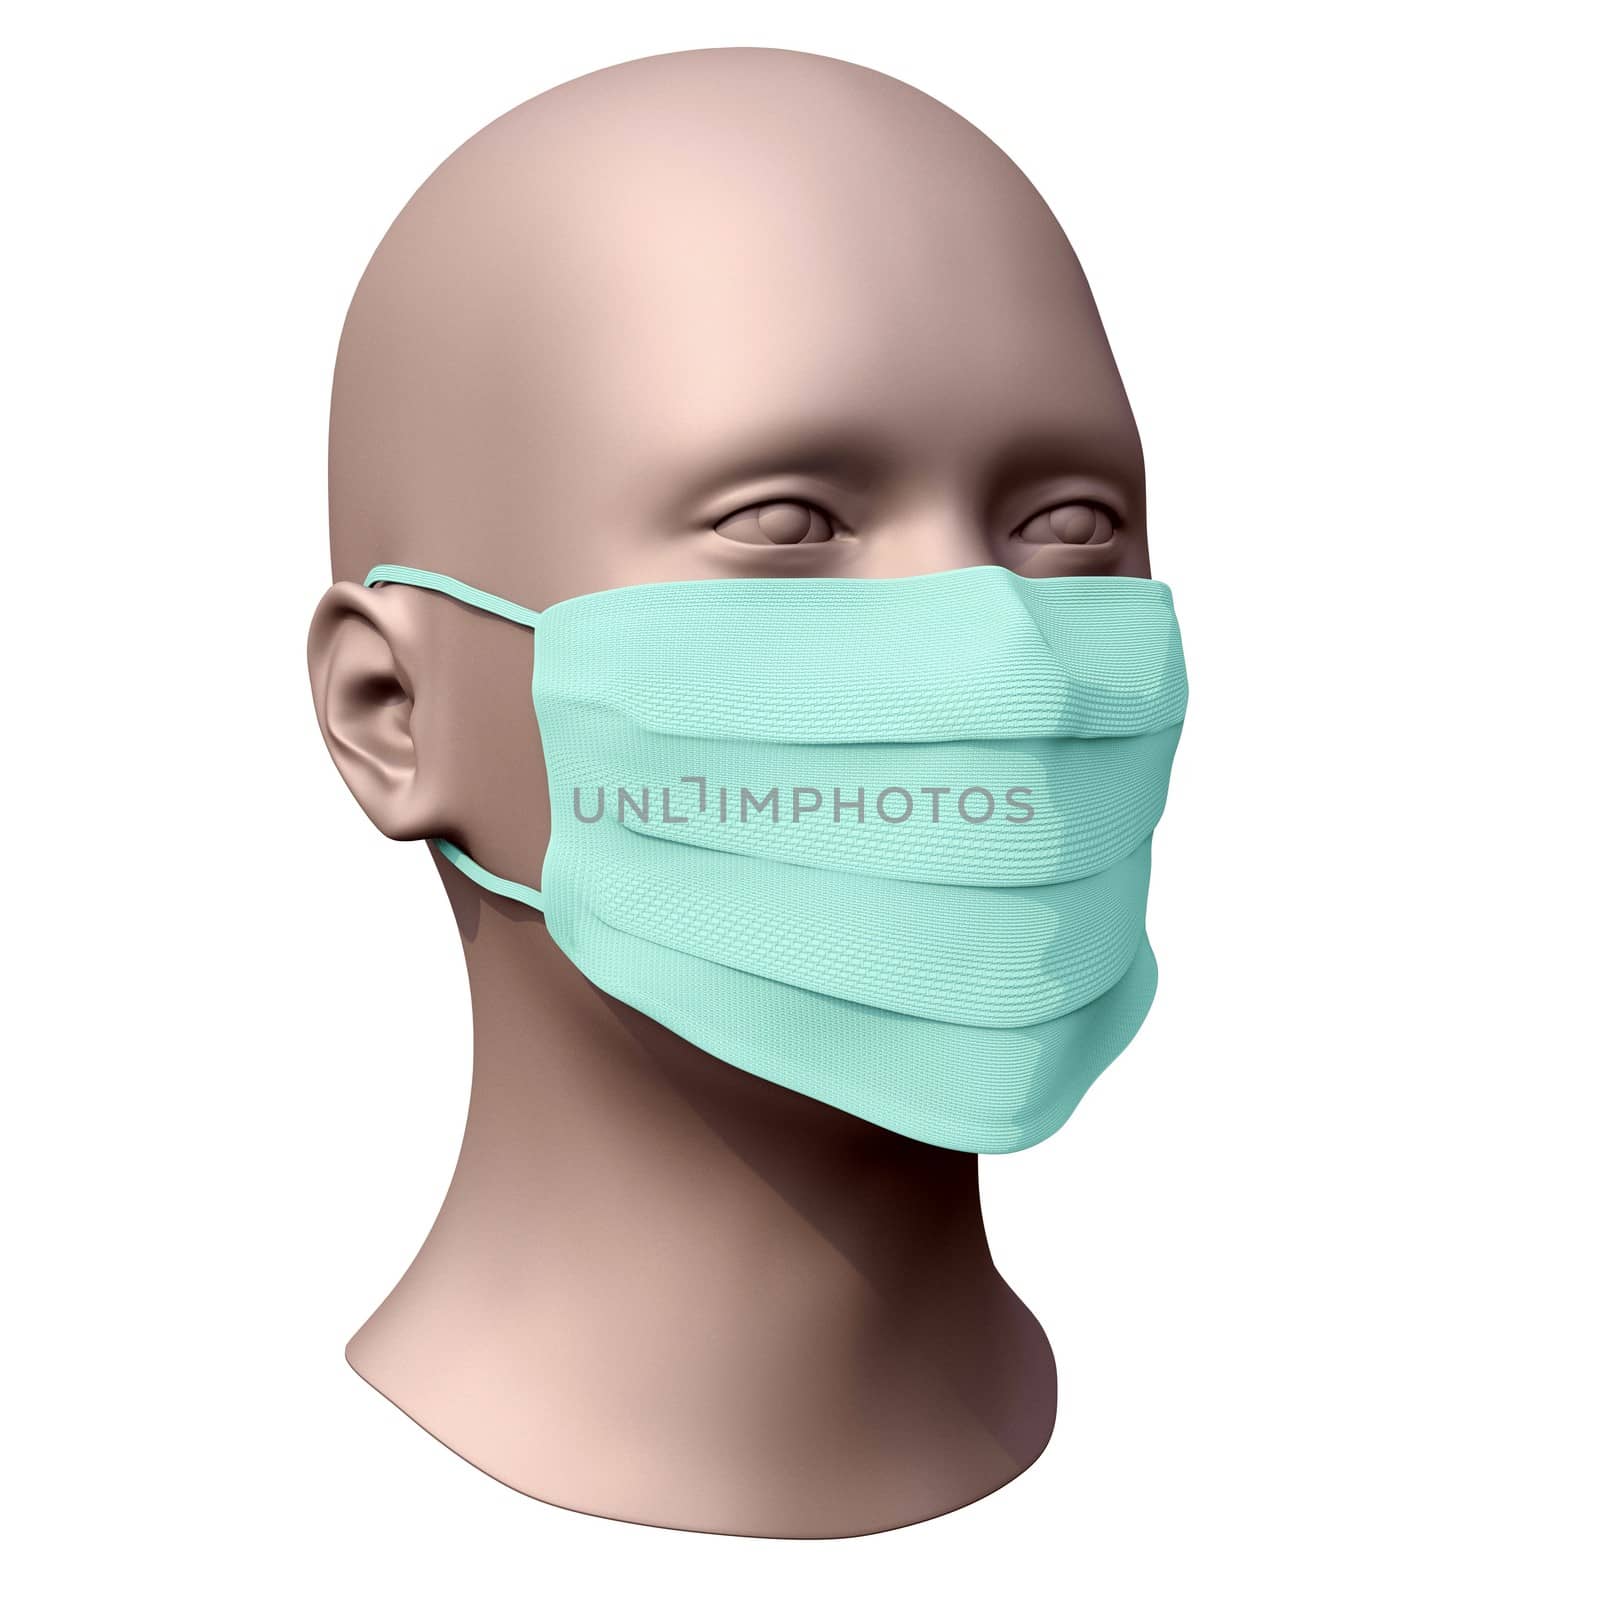 Breathing mask or medical mask on face. 3d illustration.